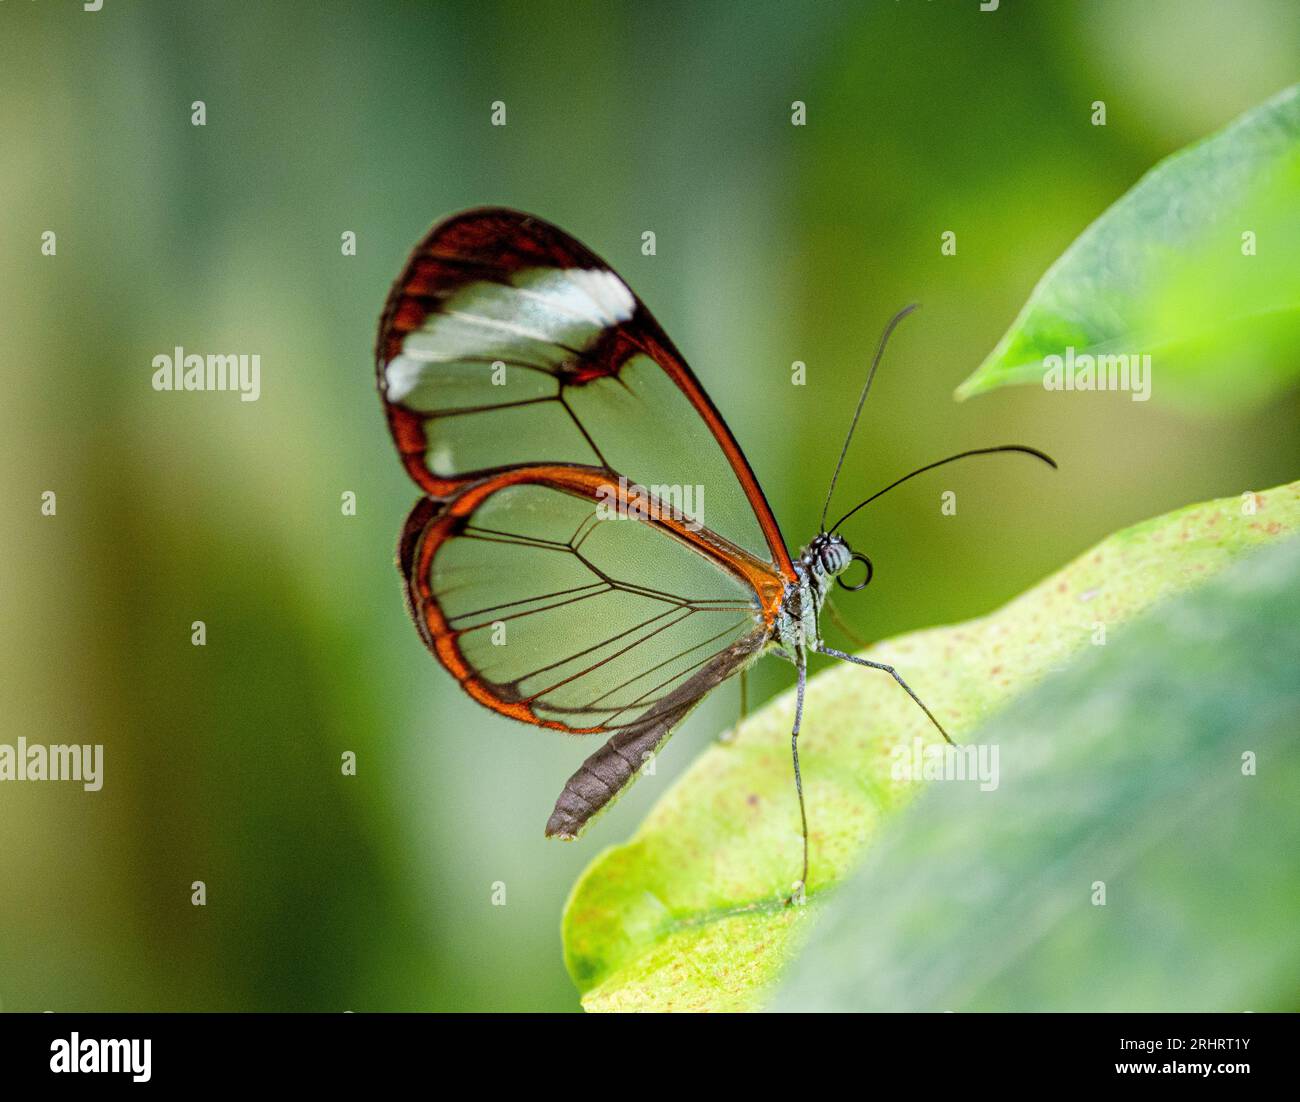 Farfalla con piedi di pennello, vetro (Greta oto), farfalla con piedi di vetro seduta su una foglia, vista laterale Foto Stock